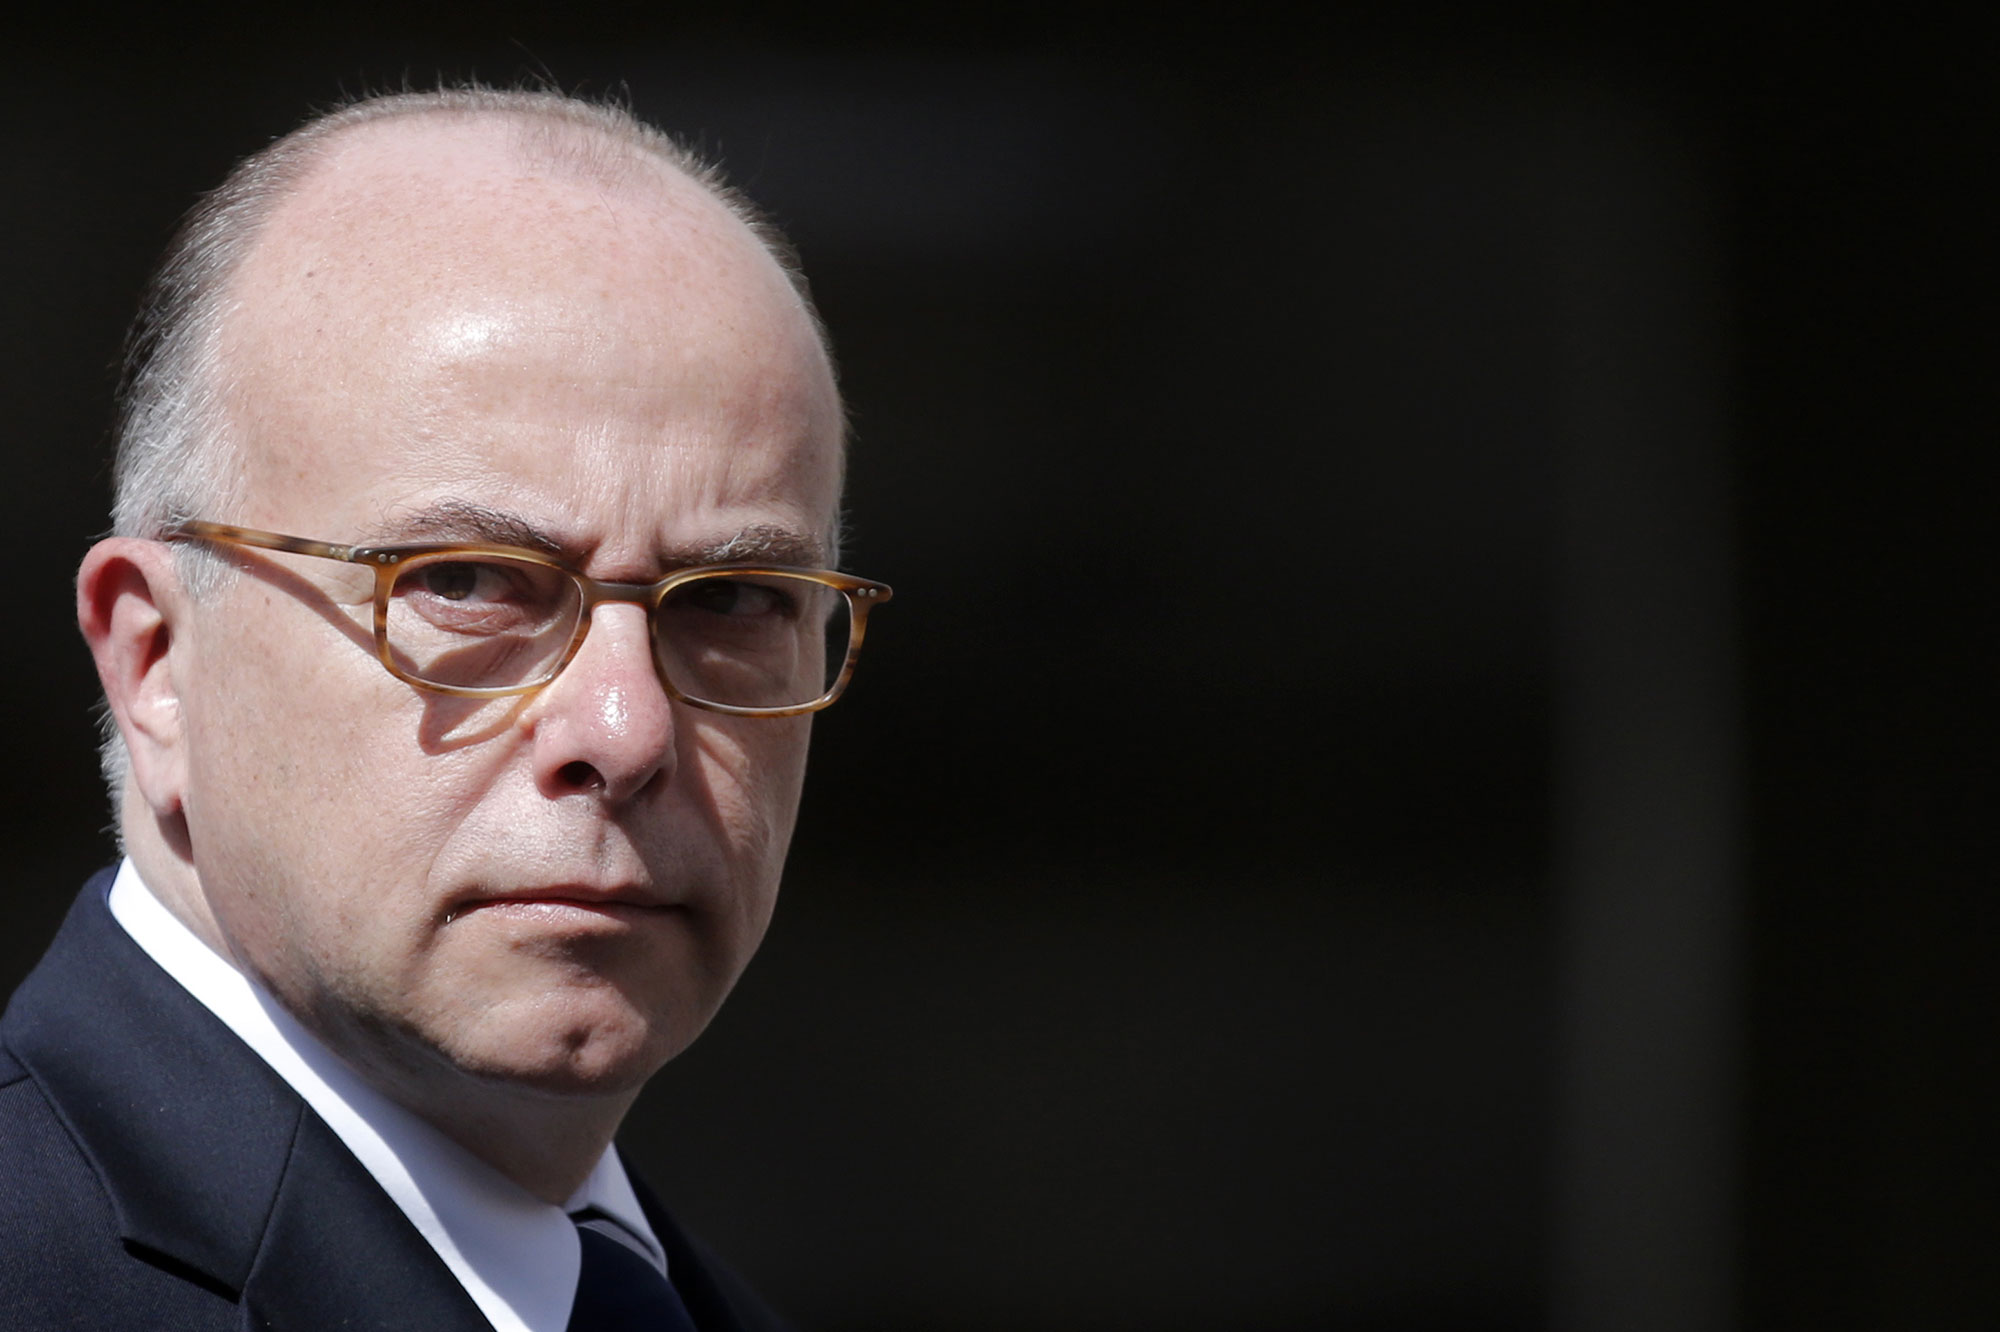 Francia belügyminiszter: újabb 128 házkutatás, a titkosszolgálatok nem hibáztak (2. rész)